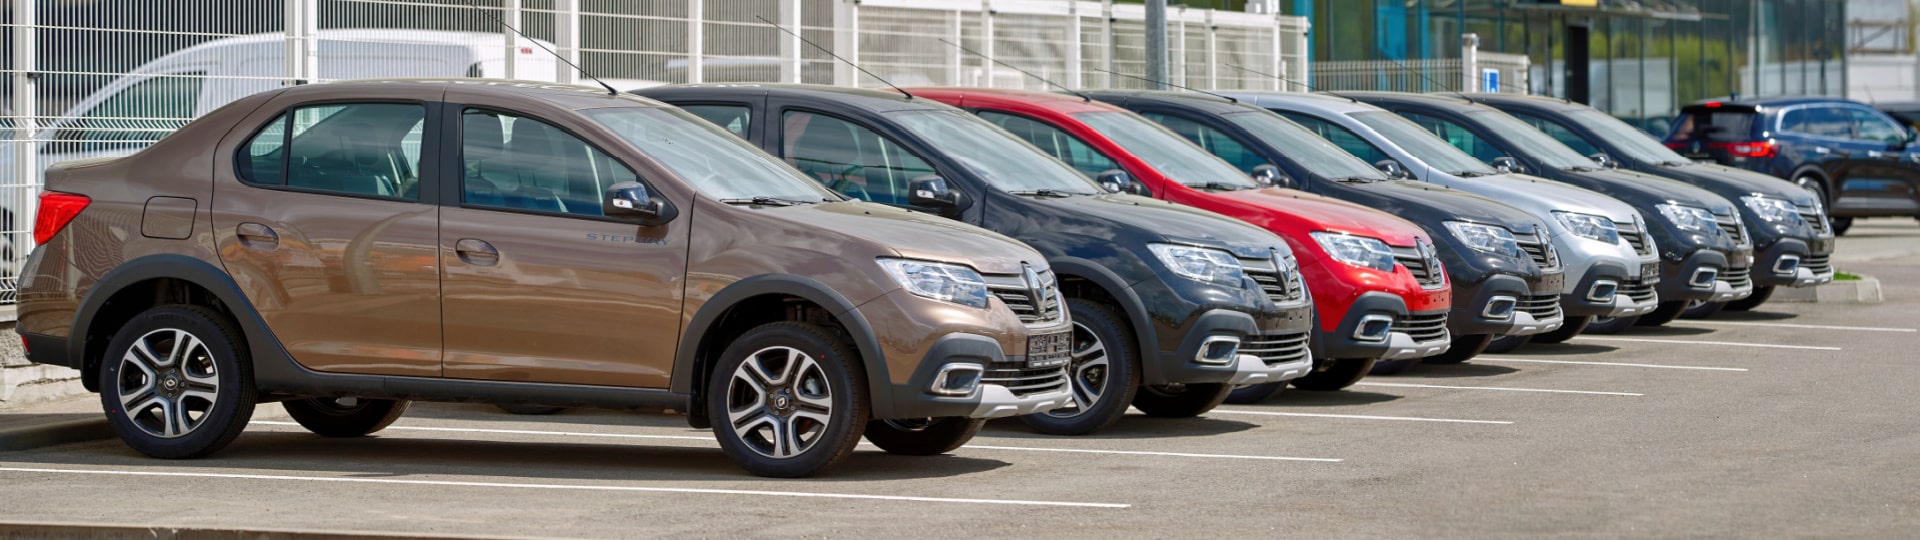 Renault v prvním pololetí zvýšil prodej o 13 procent